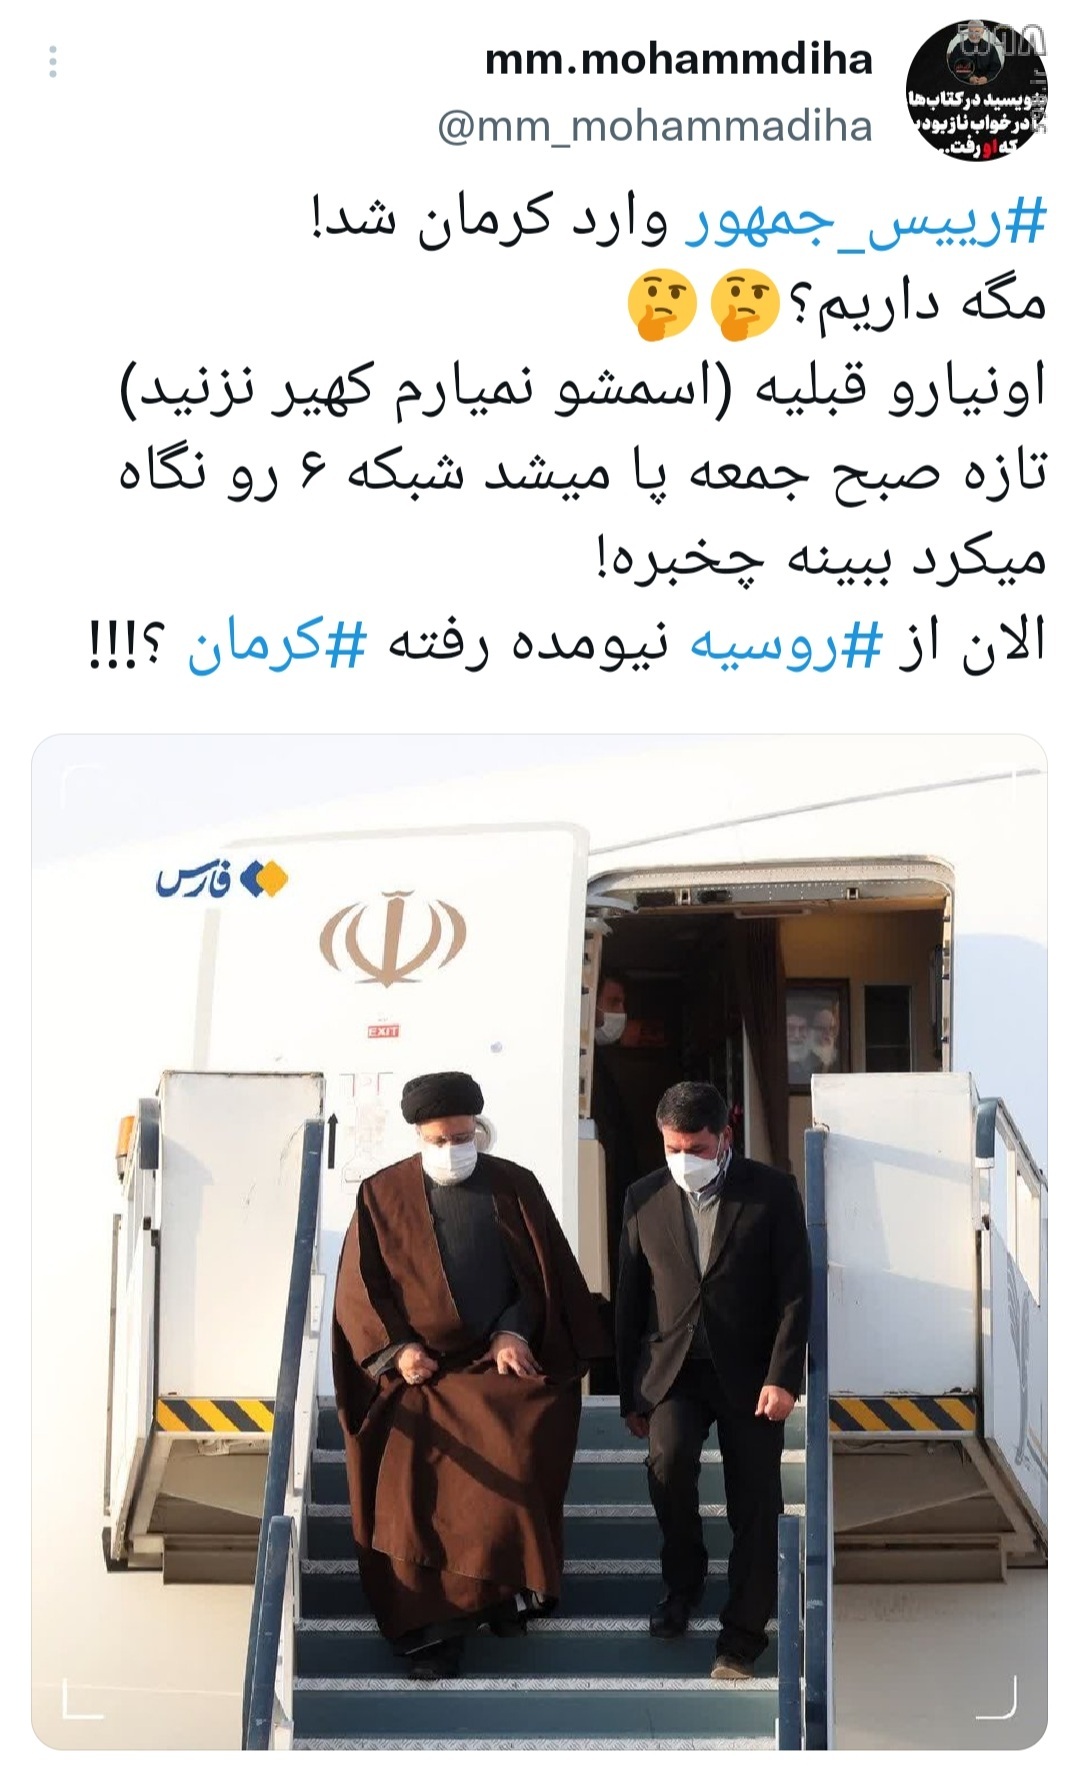 رئیسی خستگی را خسته کرد! / واکنش کاربران فضای مجازی به سفر رئیسی به کرمان